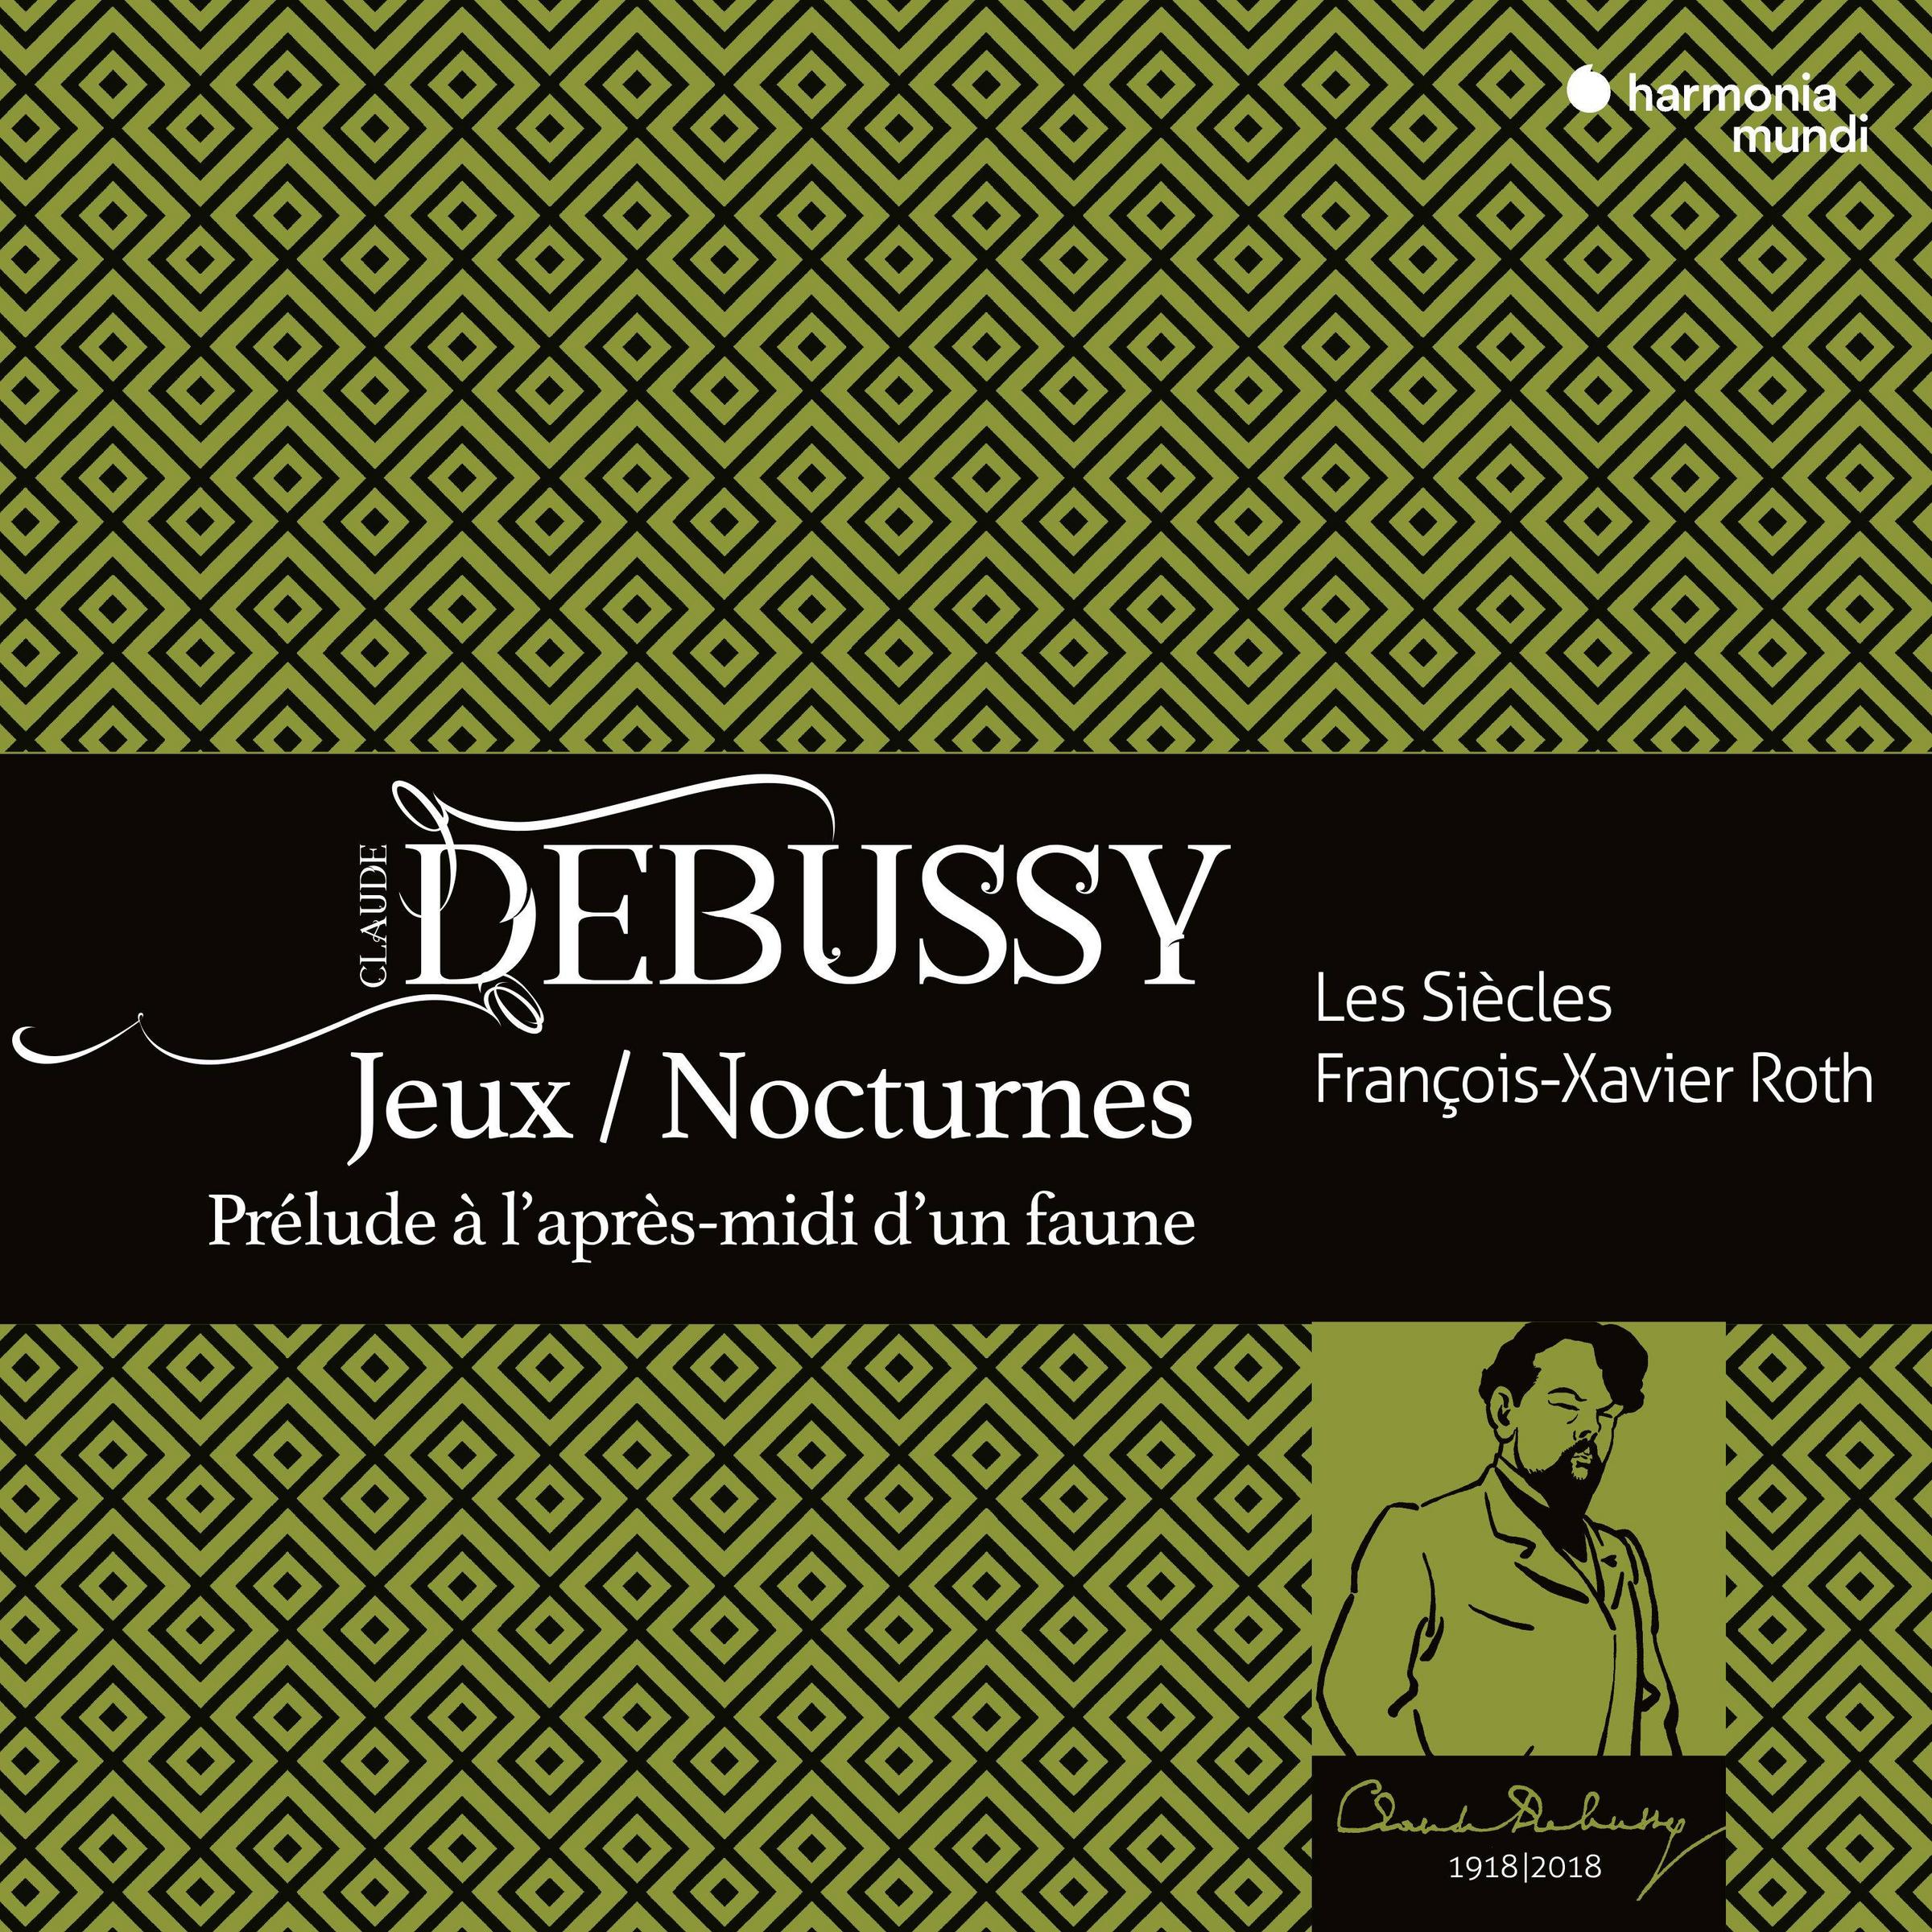 Les Siecles & Francois-Xavier Roth - Debussy: Jeux, Nocturnes, Prelude a l’apres midi d’un faune (2018) [FLAC 24bit/44,1kHz]